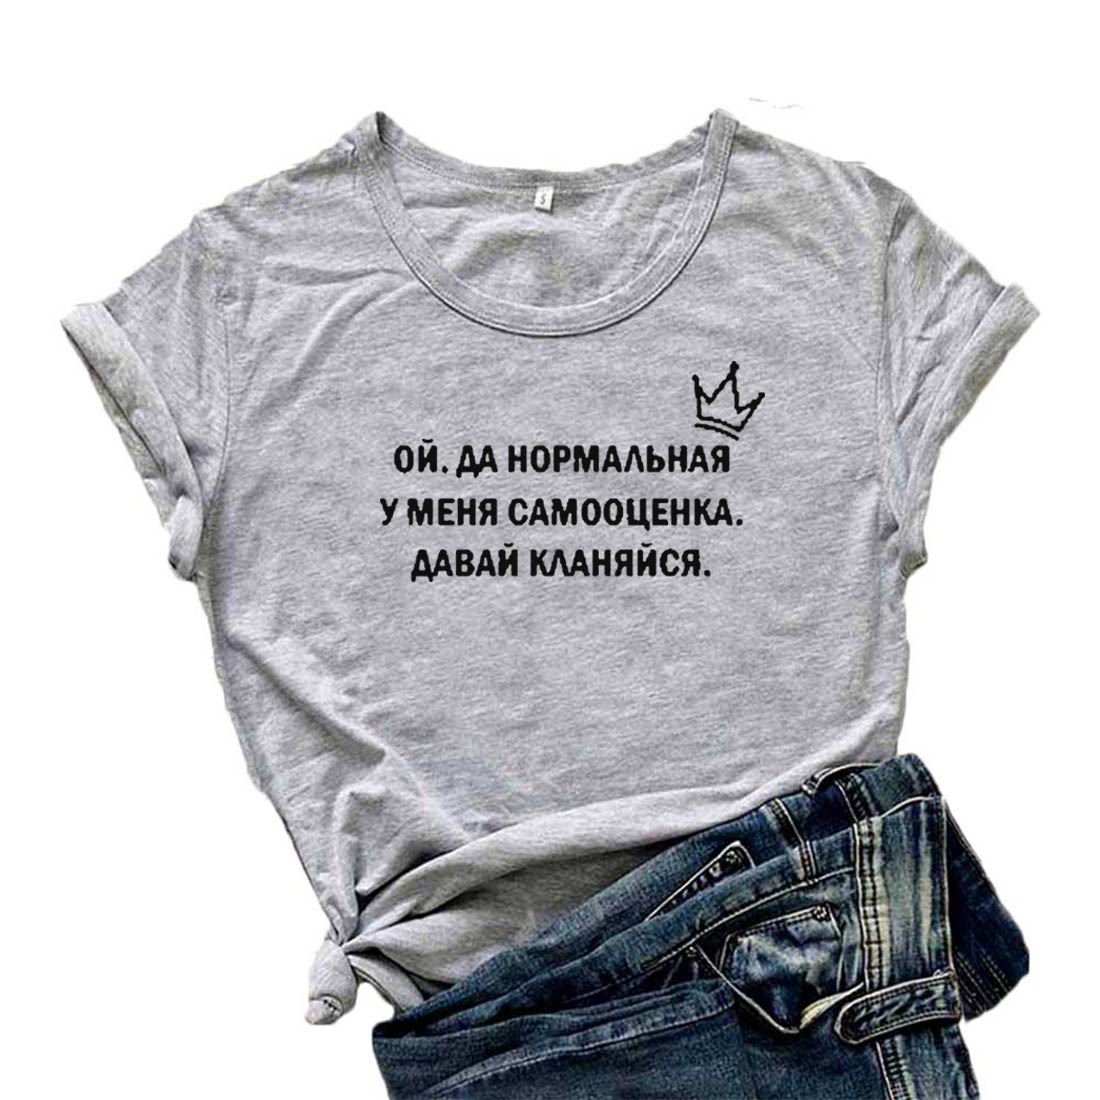 Mikialong 나는 정상적인 자기 존경 T 셔츠를 가지고있다 여자 러시아 편지 재미 있은 Tshirt 여자 정상 느슨한면 Camisetas Mujer T-셔츠